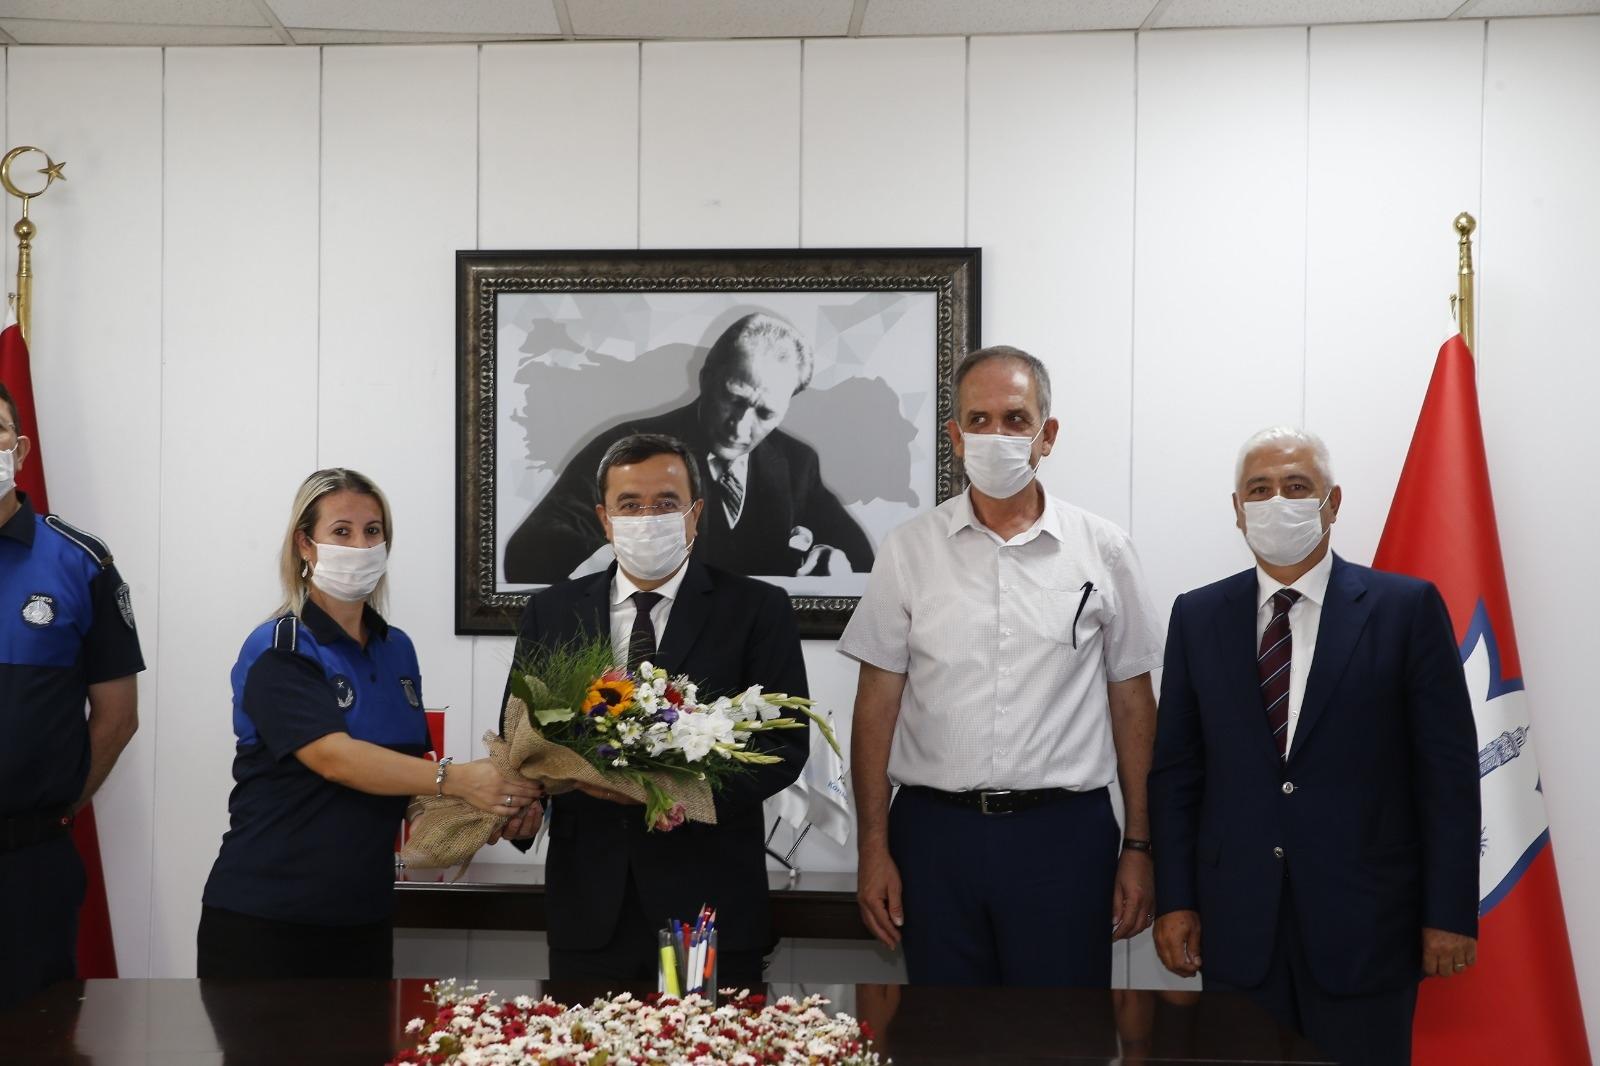 pandemi Zabıta Haftası nedeniyle Zabıta Müdürlüğü çalışanları ile bir araya gelen Konak Belediye Başkanı Abdül Batur, zabıta ekiplerine pandemi dönemindeki çalışmalarından ötürü teşekkür etti.